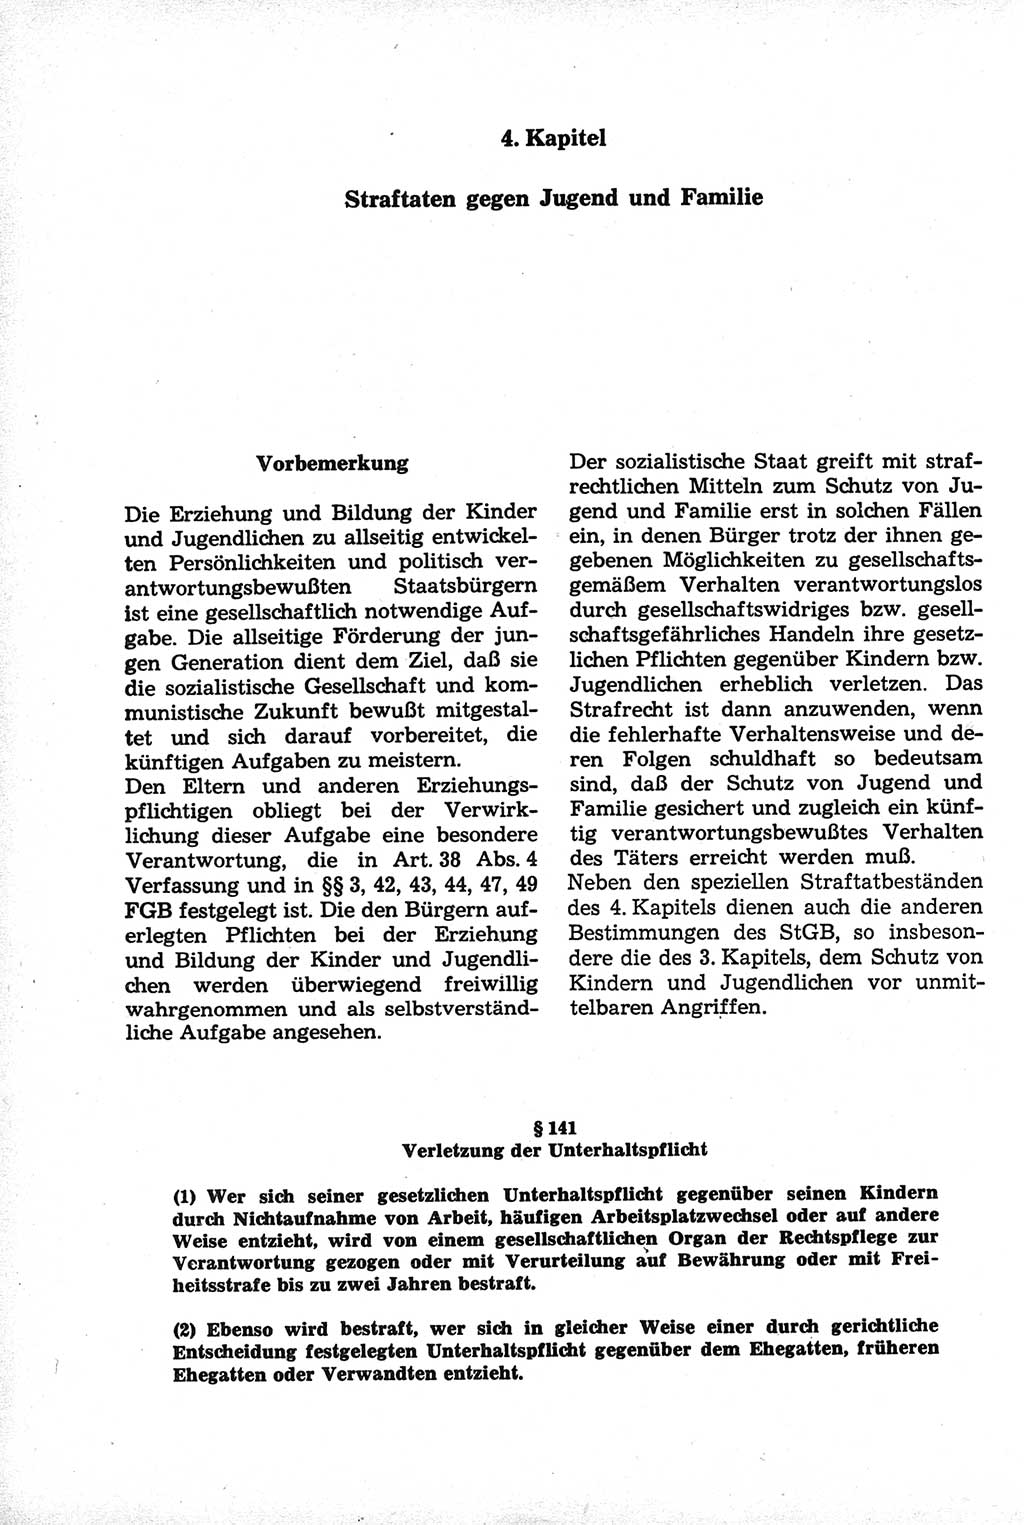 Strafrecht der Deutschen Demokratischen Republik (DDR), Kommentar zum Strafgesetzbuch (StGB) 1981, Seite 366 (Strafr. DDR Komm. StGB 1981, S. 366)